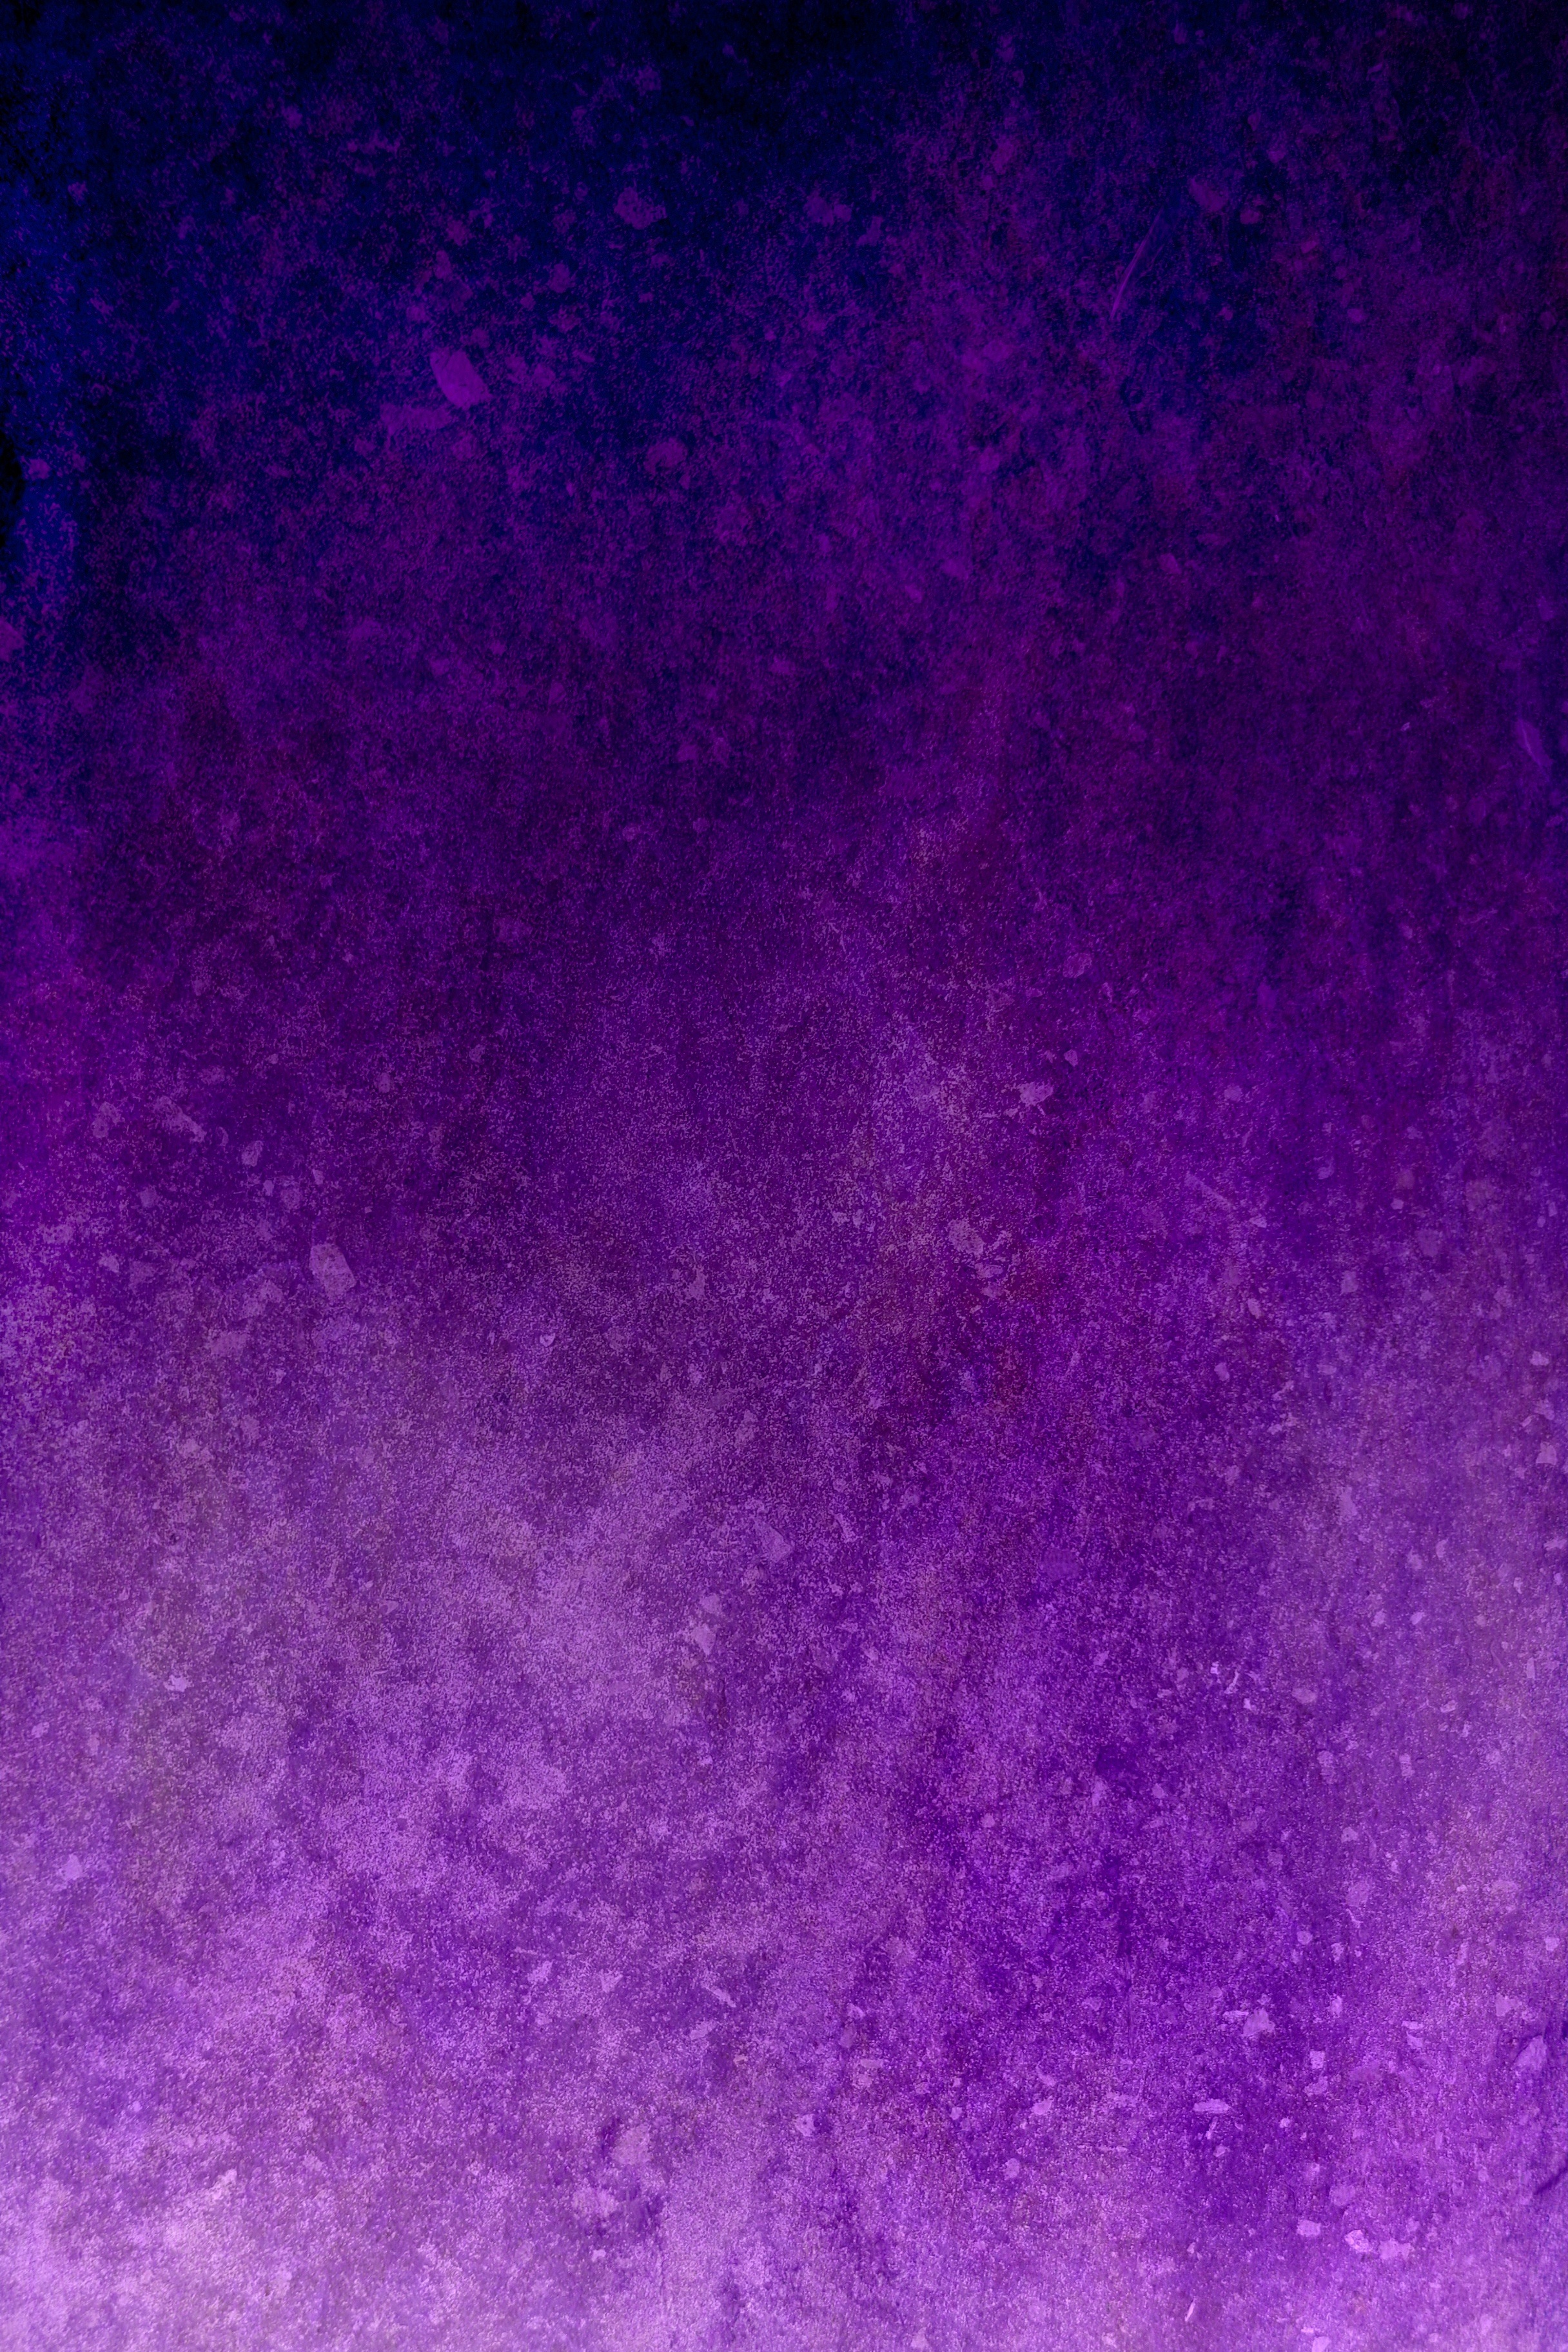 Wallpapers texture violet dark on the desktop